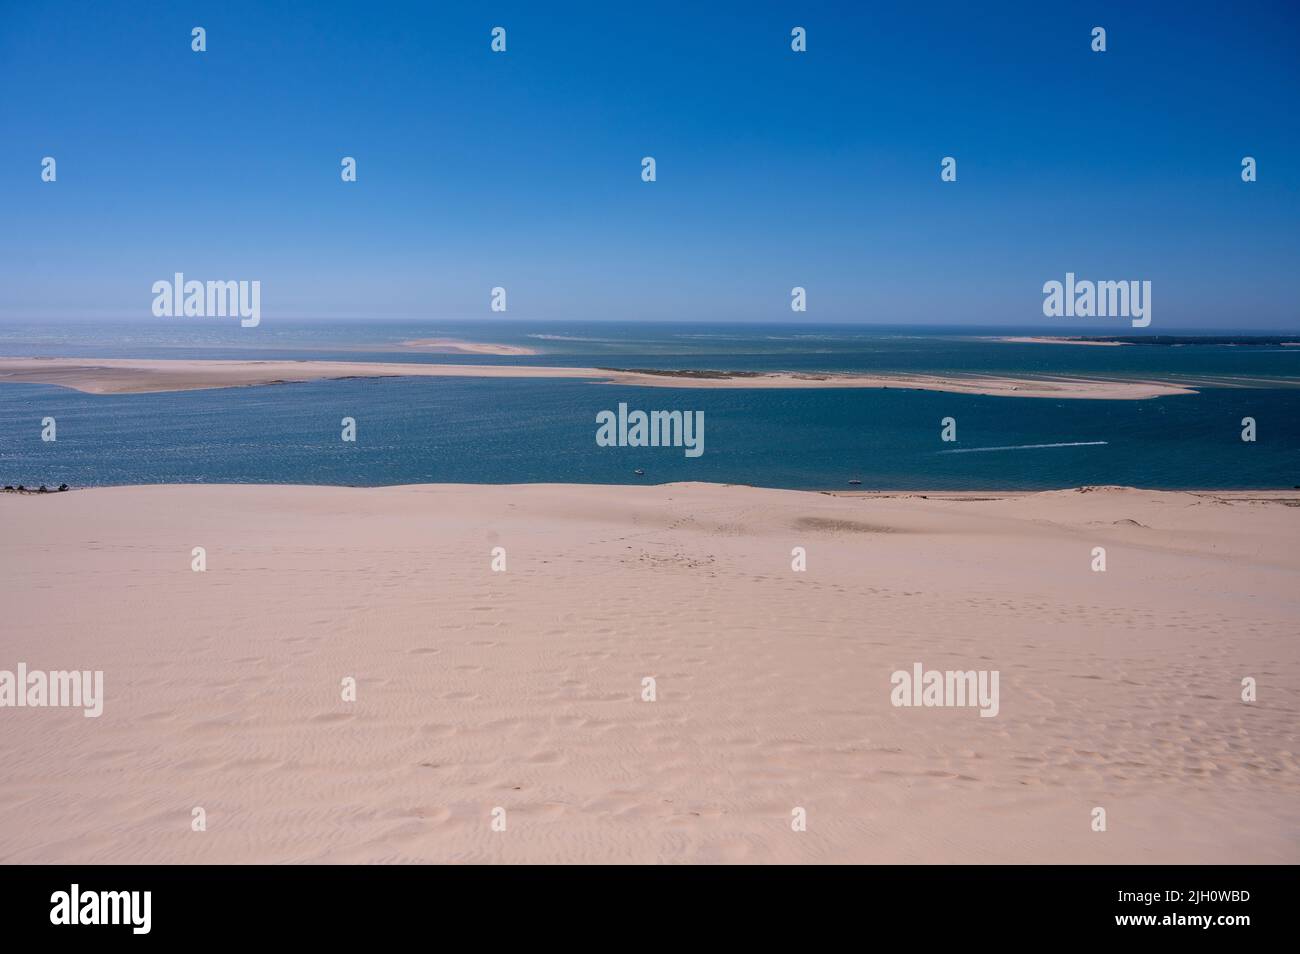 La Duna di Pilat chiamato anche Grande Dune du Pilat, le dune di sabbia più alte d'Europa che si affacciano sulla baia di Arcachon in Francia Foto Stock